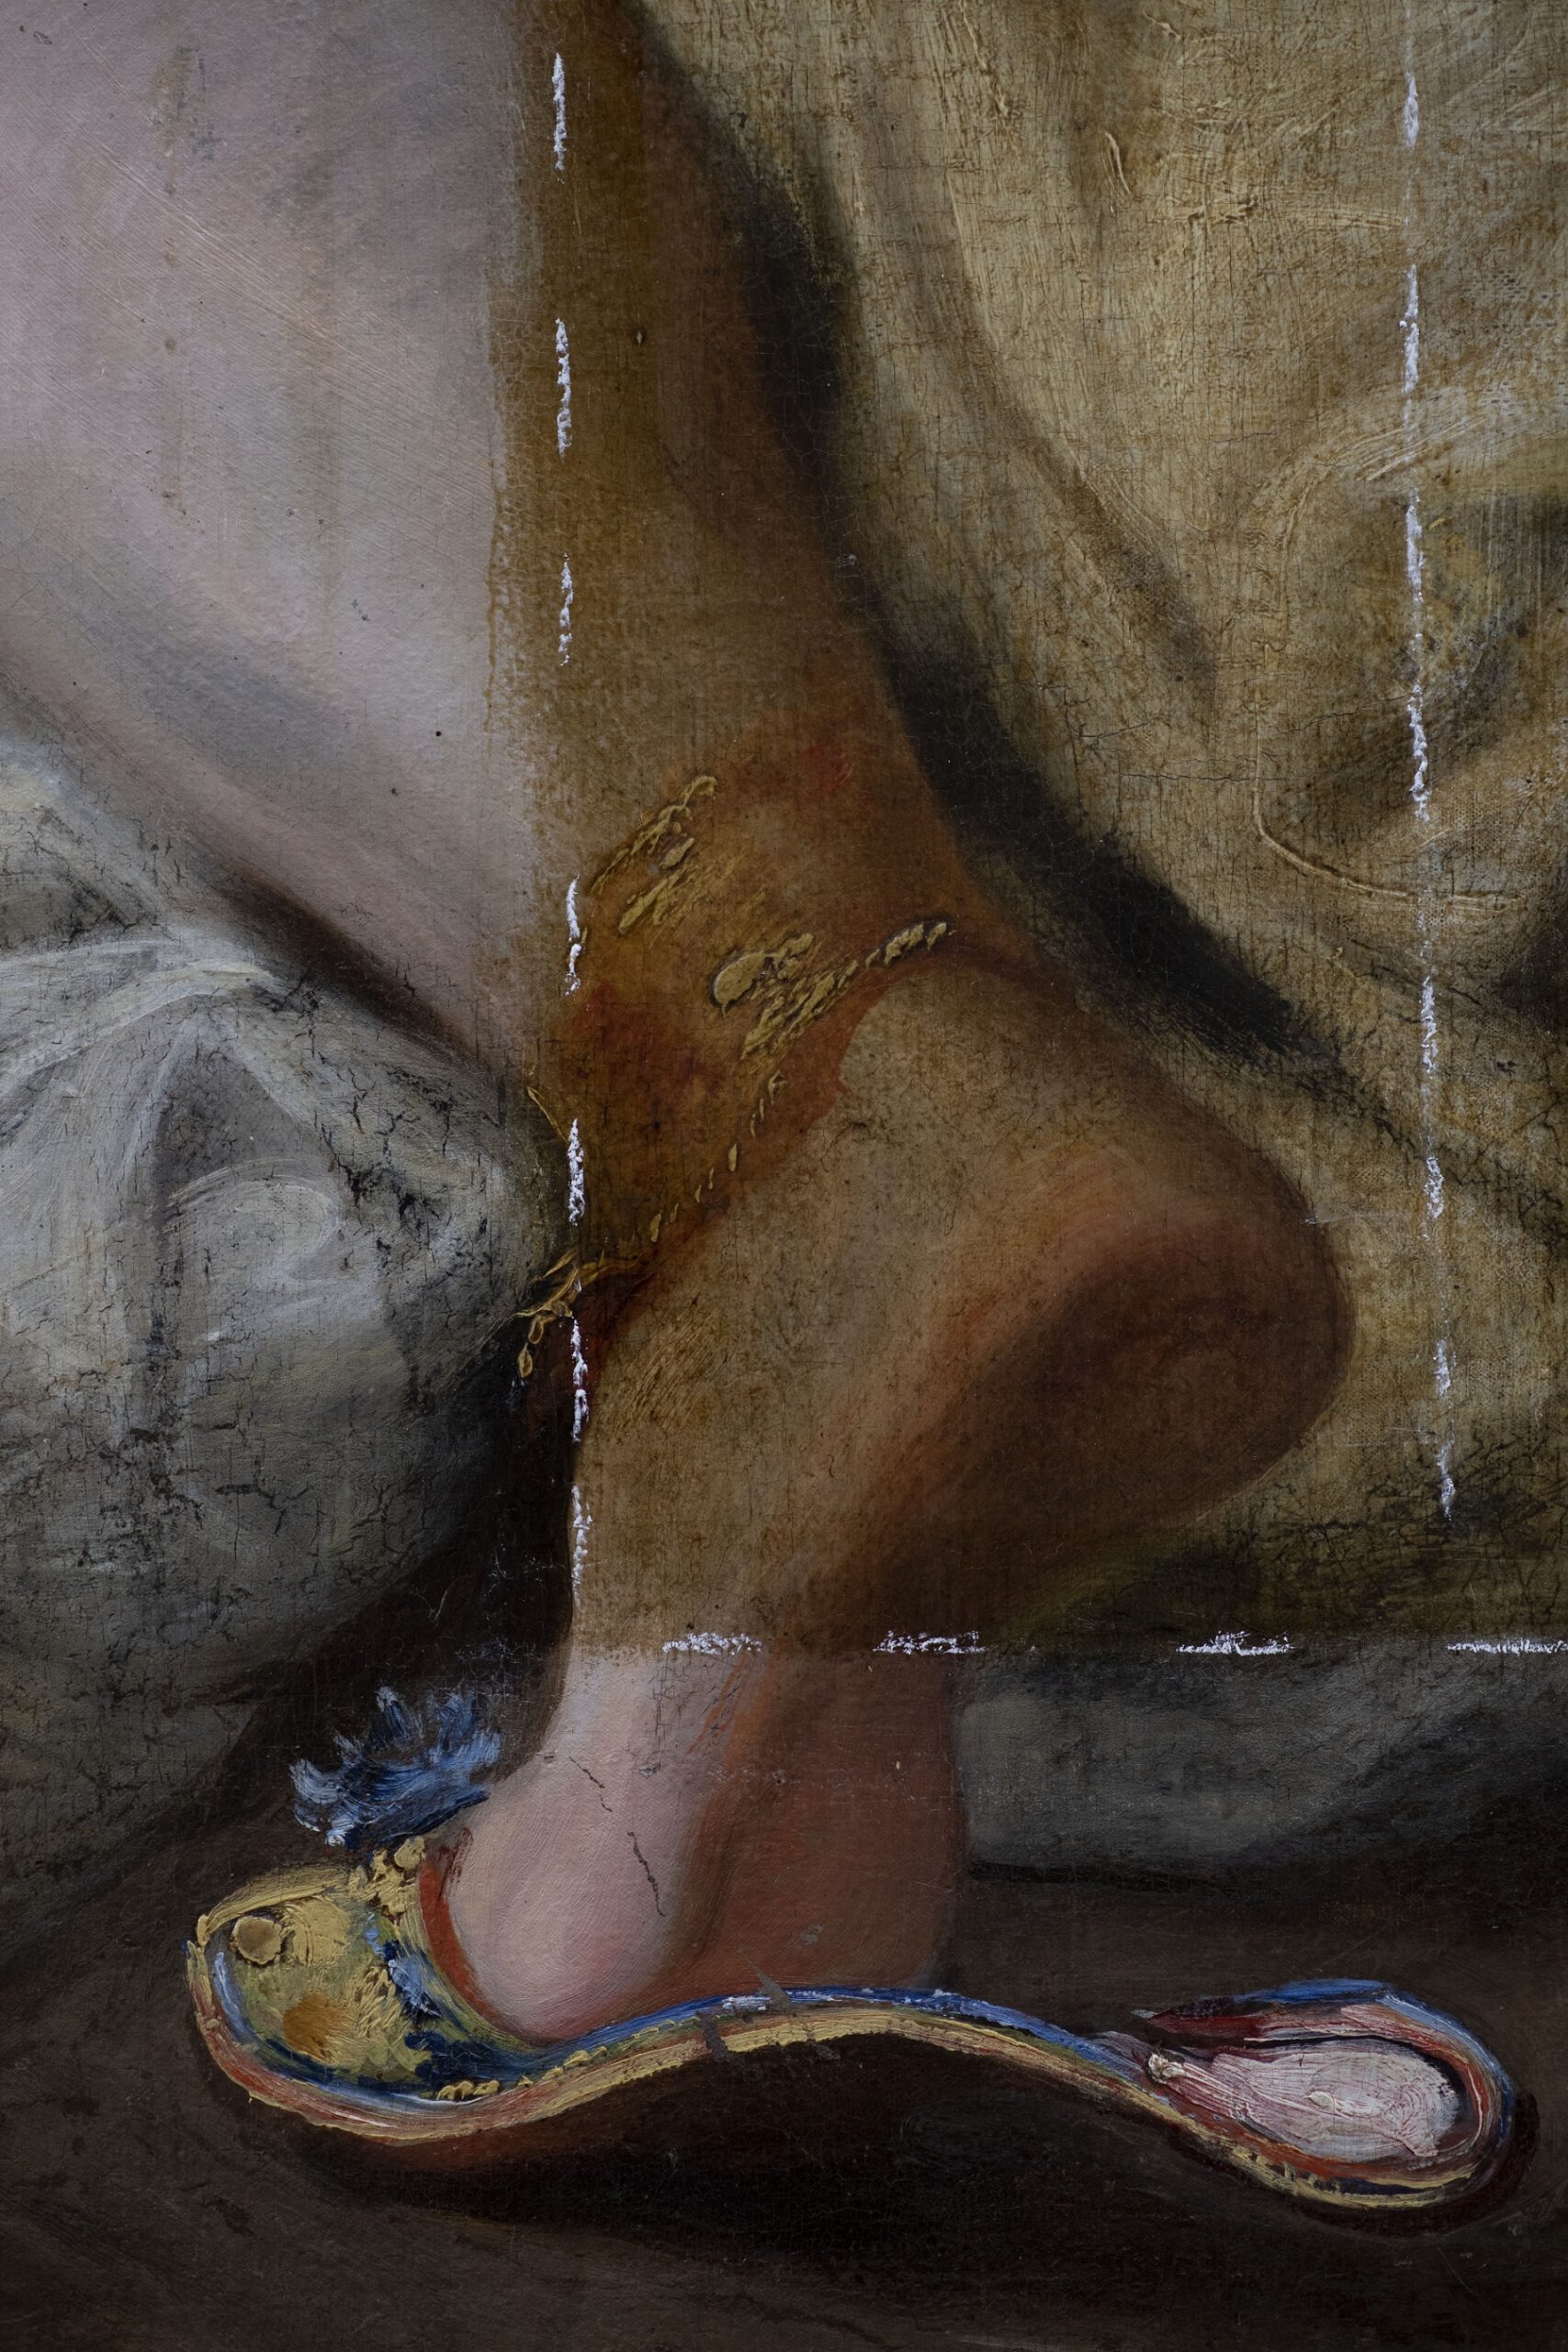 Eugène Delacroix (1798-1863), La Mort de Sardanapale (détail en cours de restauration, 15 novembre 2022), 1827. Huile sur toile, 392 x 496 cm. Paris, département des Peintures du musée du Louvre. © Arcanes